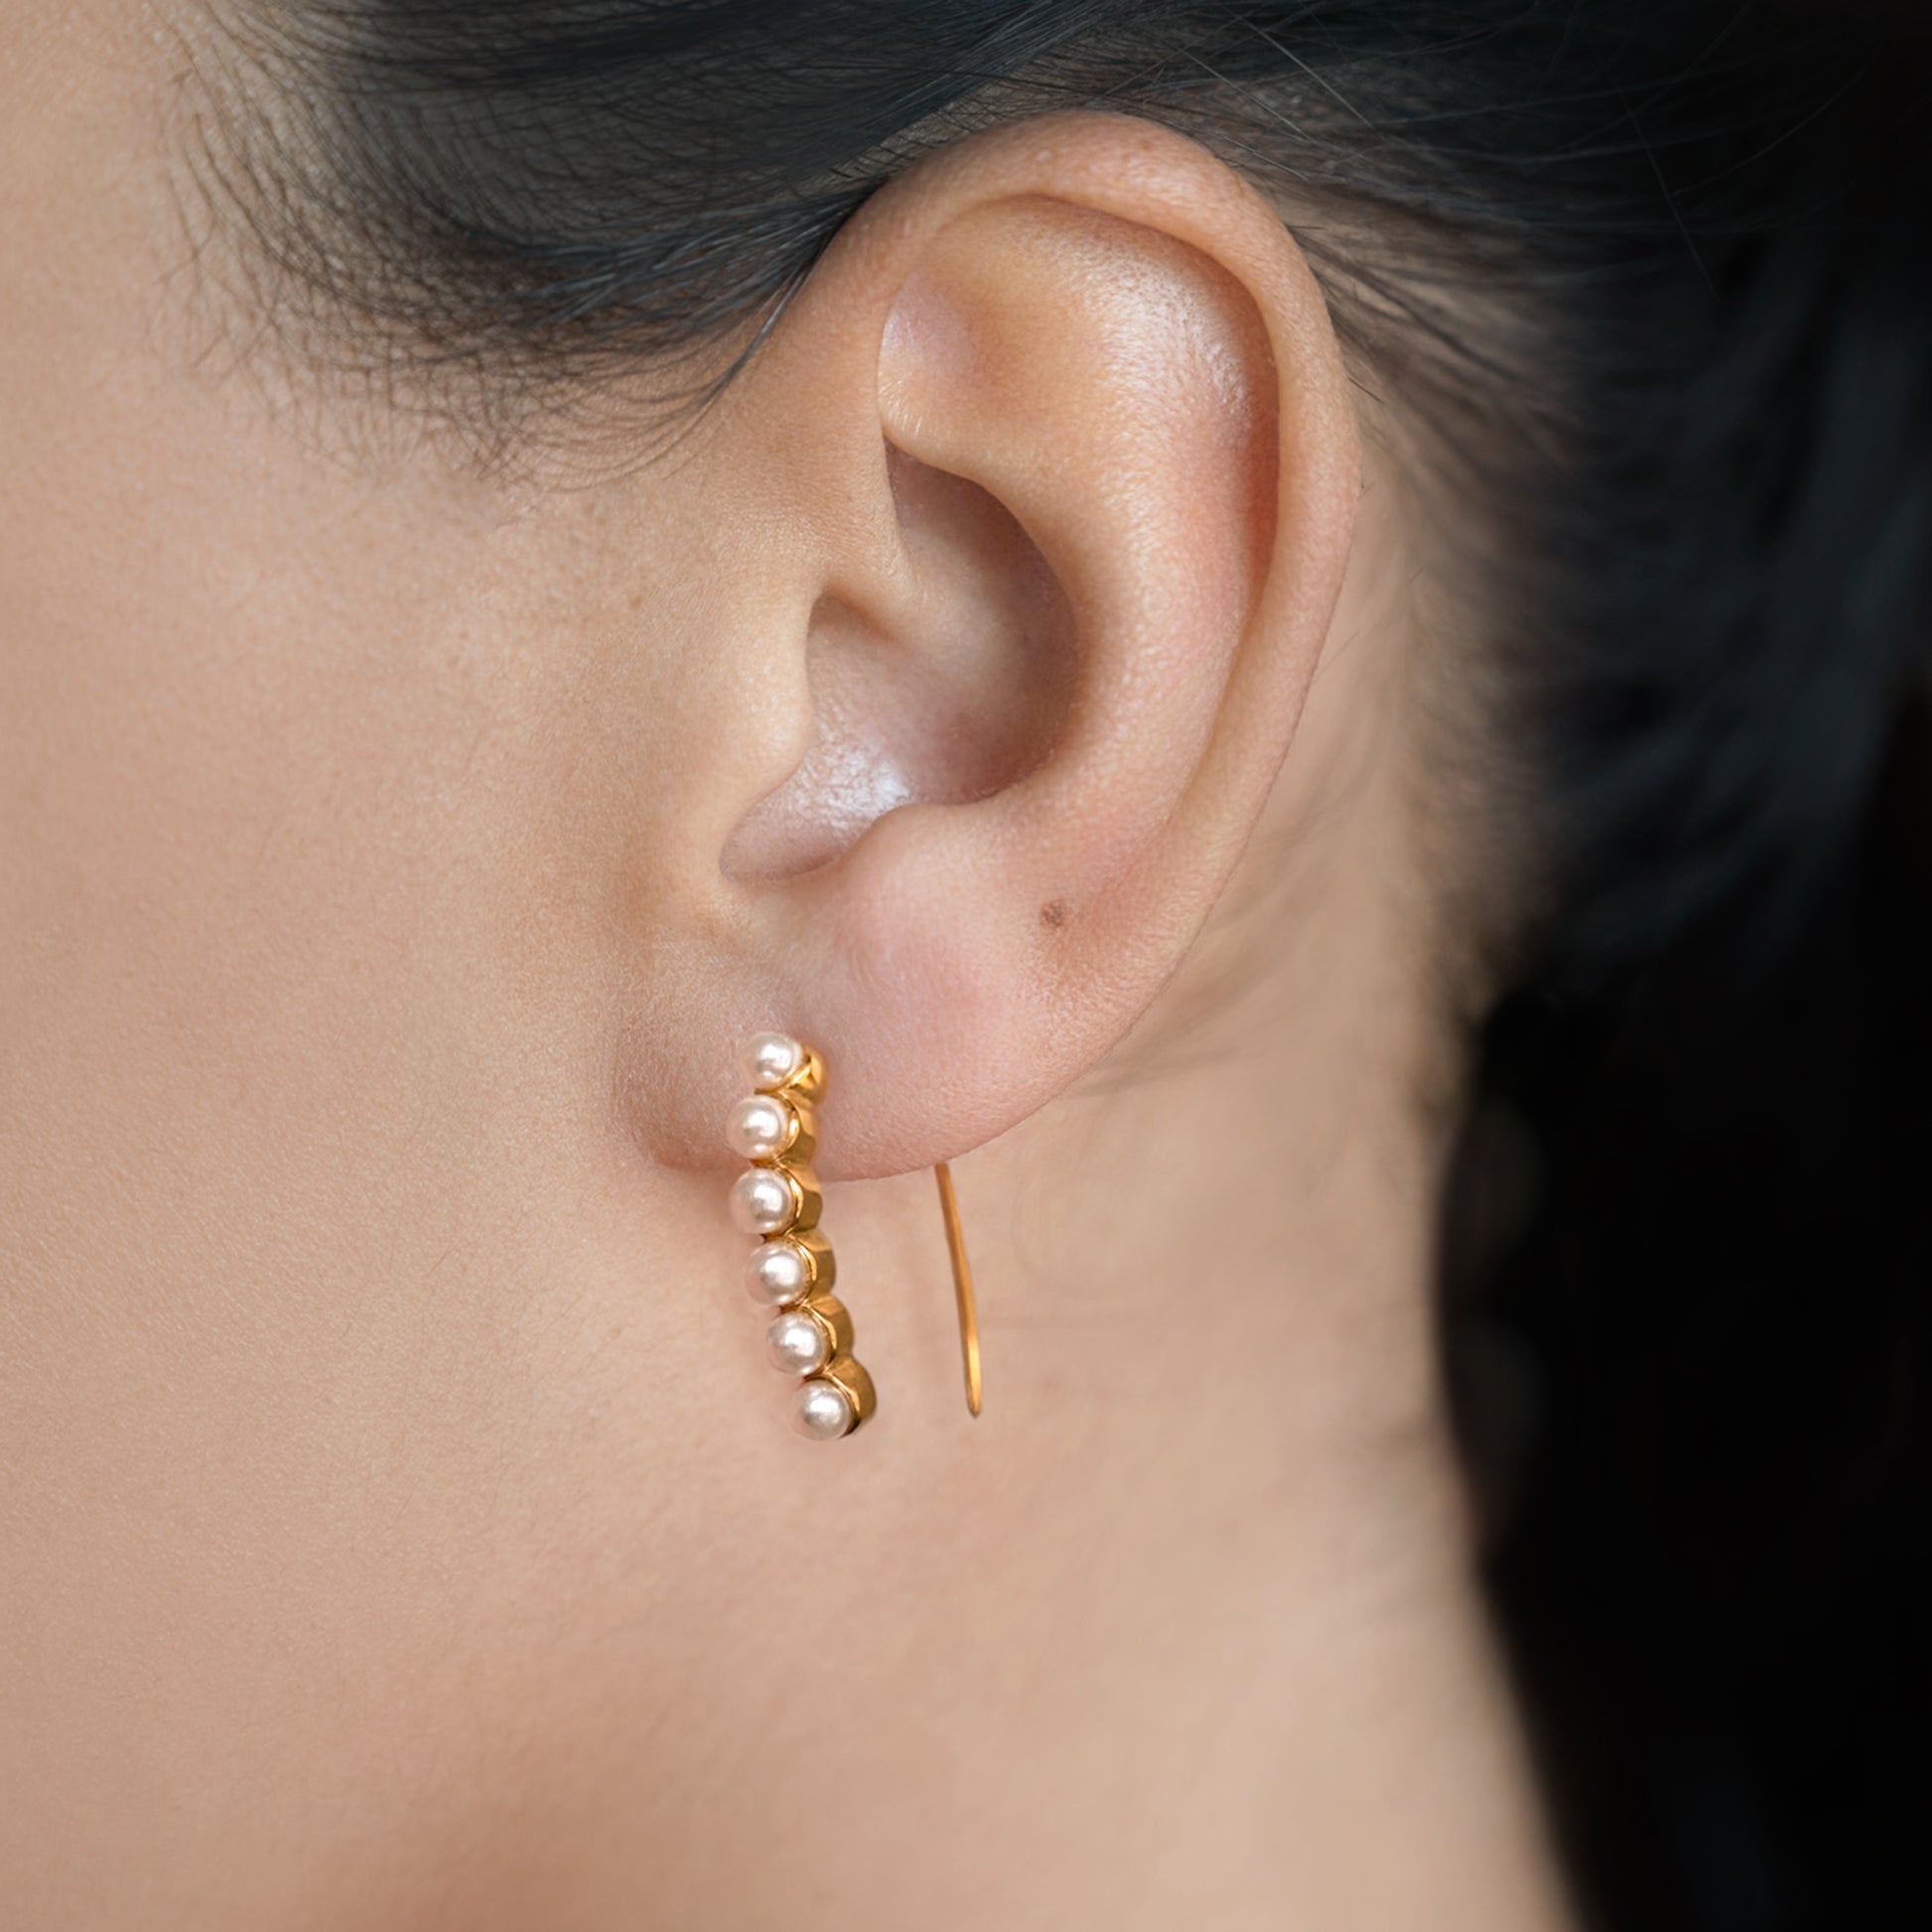 Pearl Bar Drop Earrings Non Tarnish shown worn in a model's ear